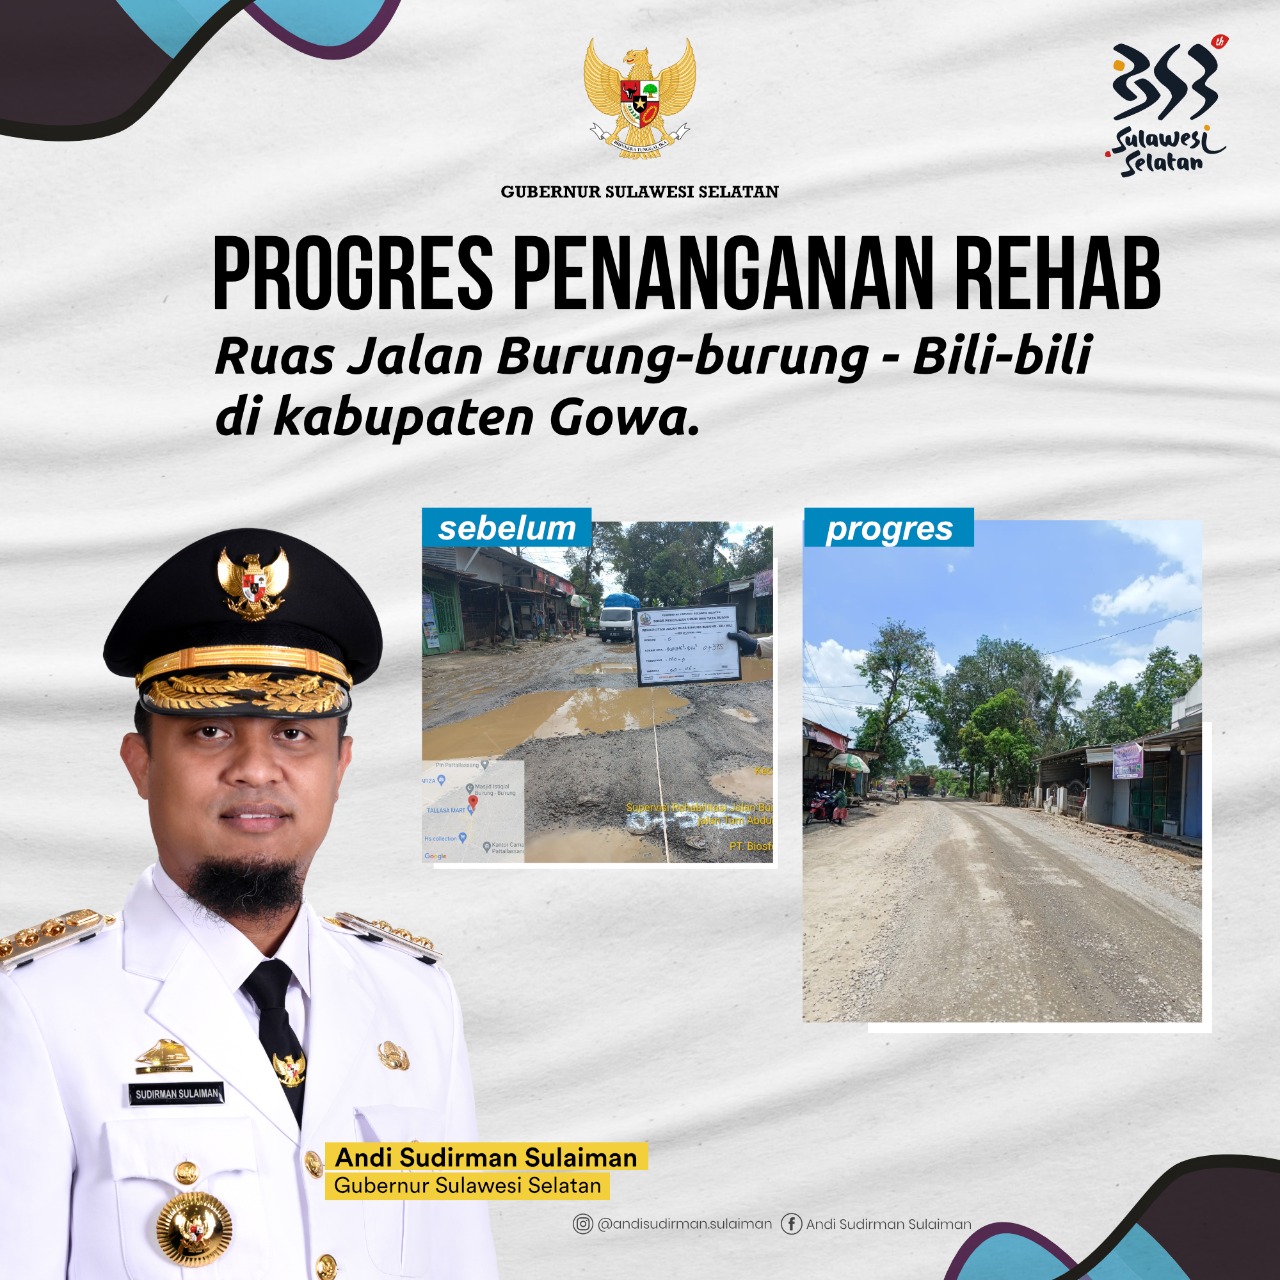 Gubernur Posting Progres Pengerjaan Rehab Ruas Burung-burung-Bili-bili, Netizen: Alhamdulillah!